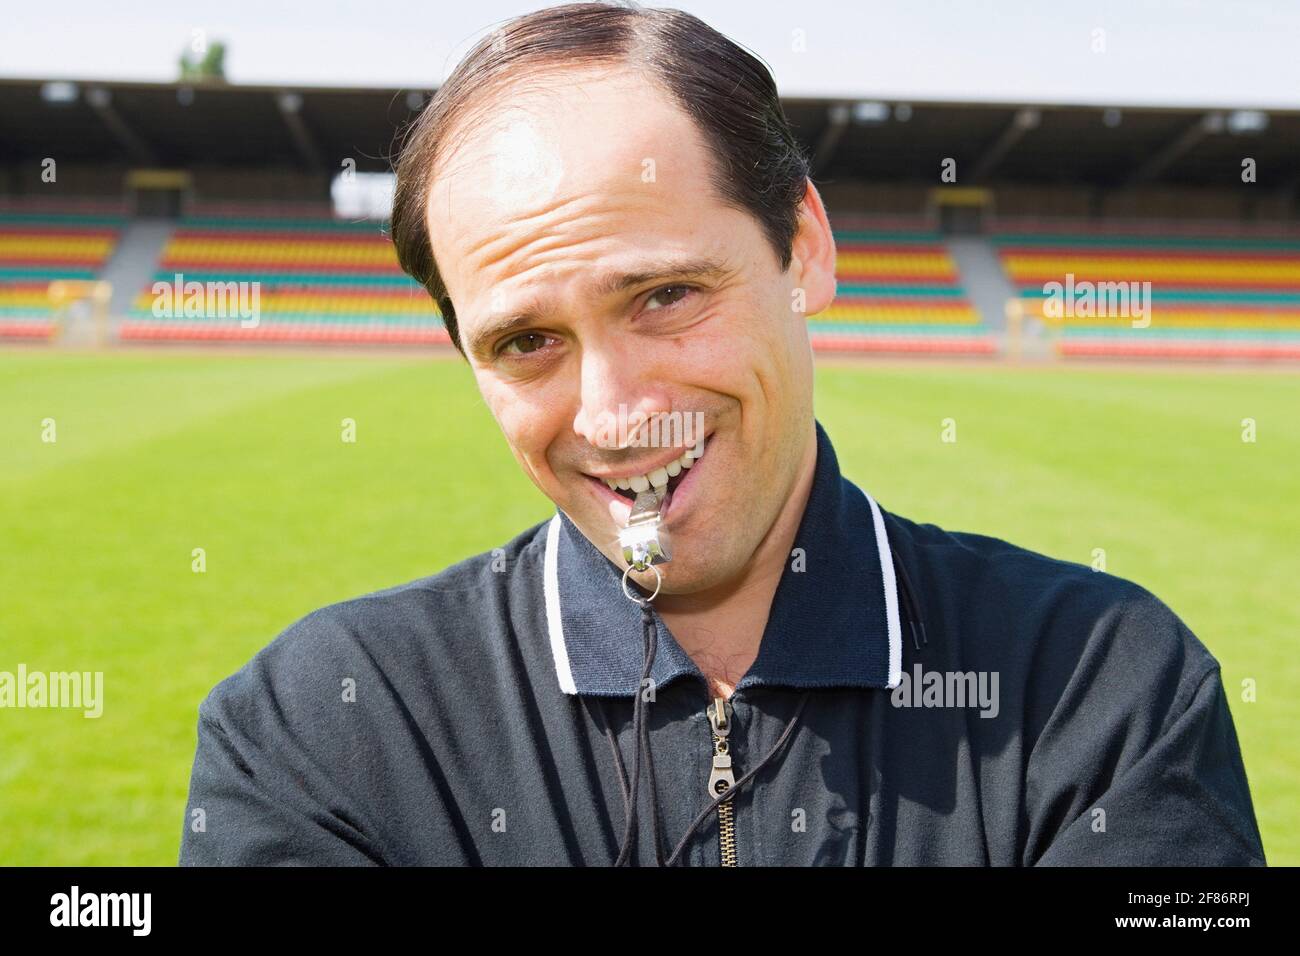 Portrait lächelnder, selbstbewusster Fußballtrainer mit Pfeife auf dem Feld Stockfoto